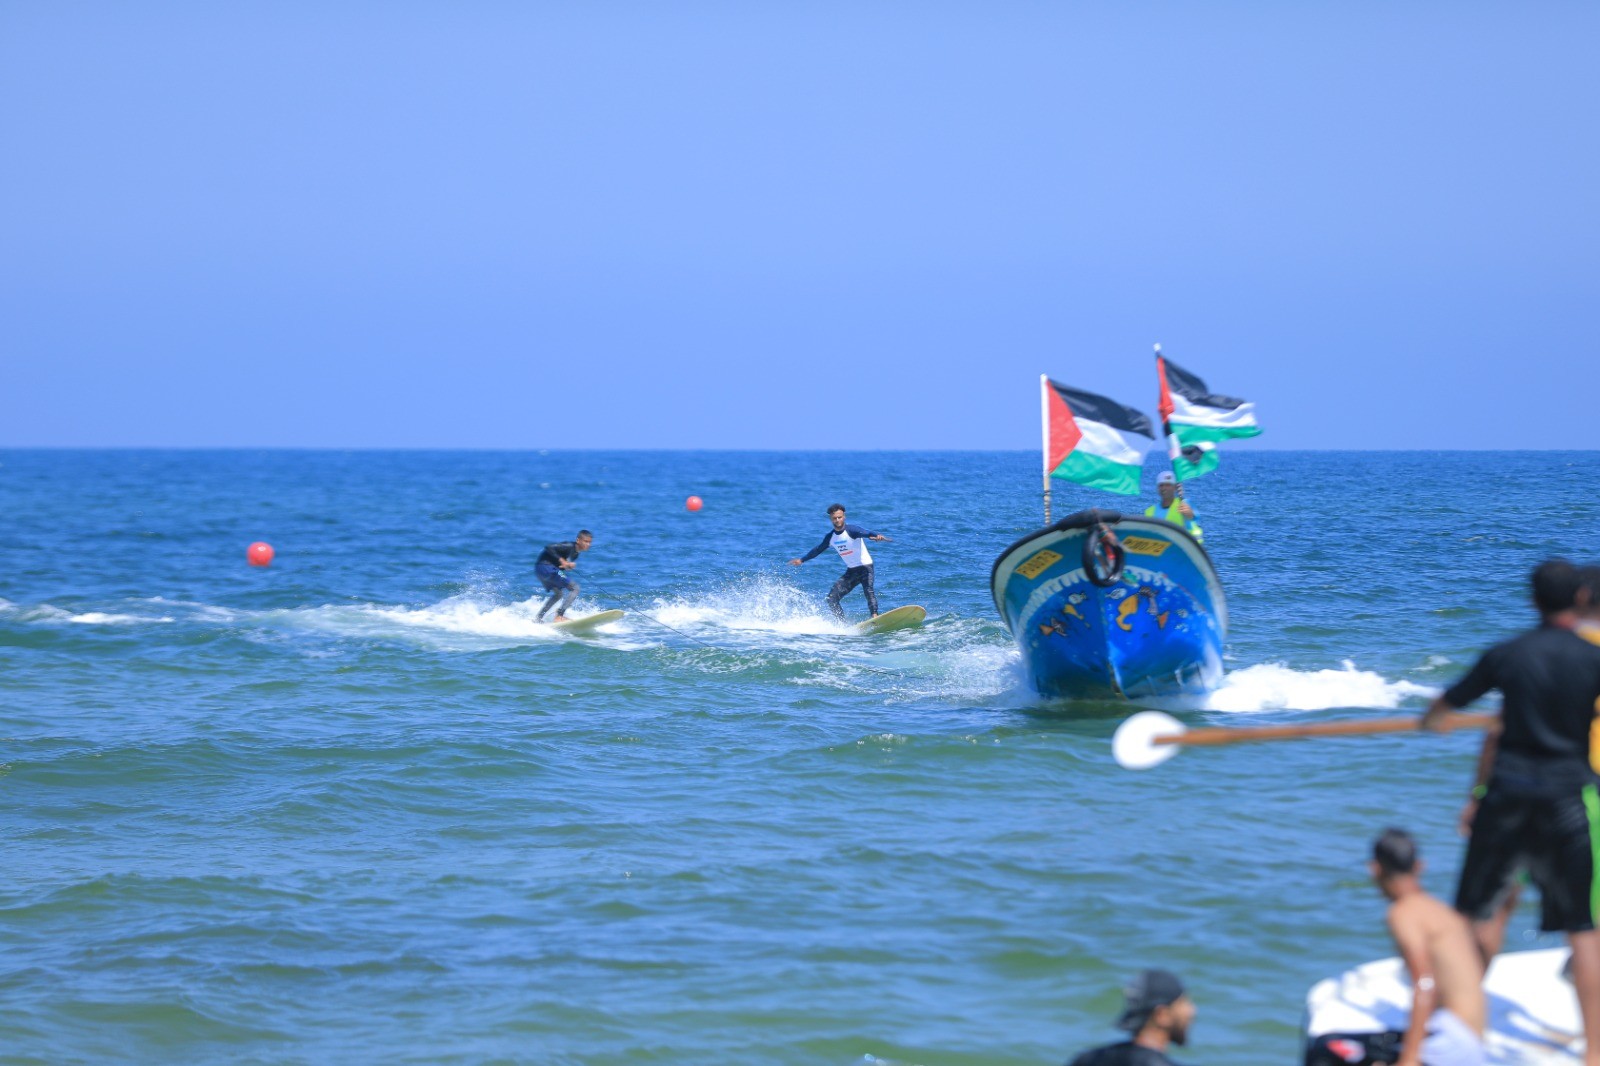 فعالية نجدّف من اجل كوكبٍ أزرق على شاطئ بحر غزة 87.jpg